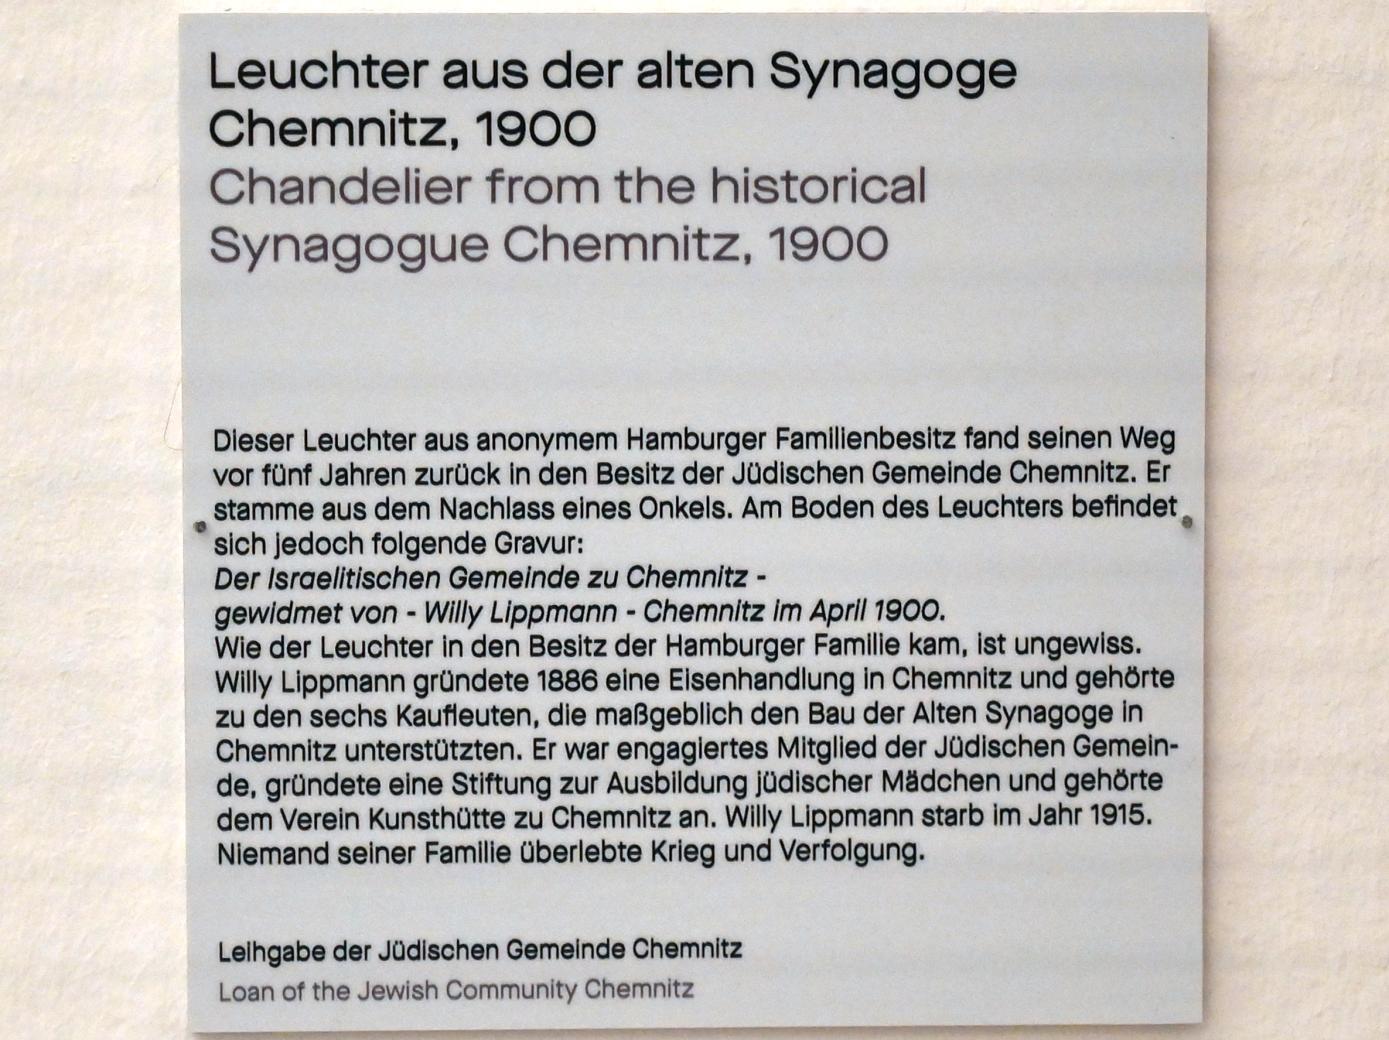 Leuchter aus der alten Synagoge Chemnitz, Chemnitz, Kunstsammlungen am Theaterplatz, Saal 1, 1900, Bild 3/3